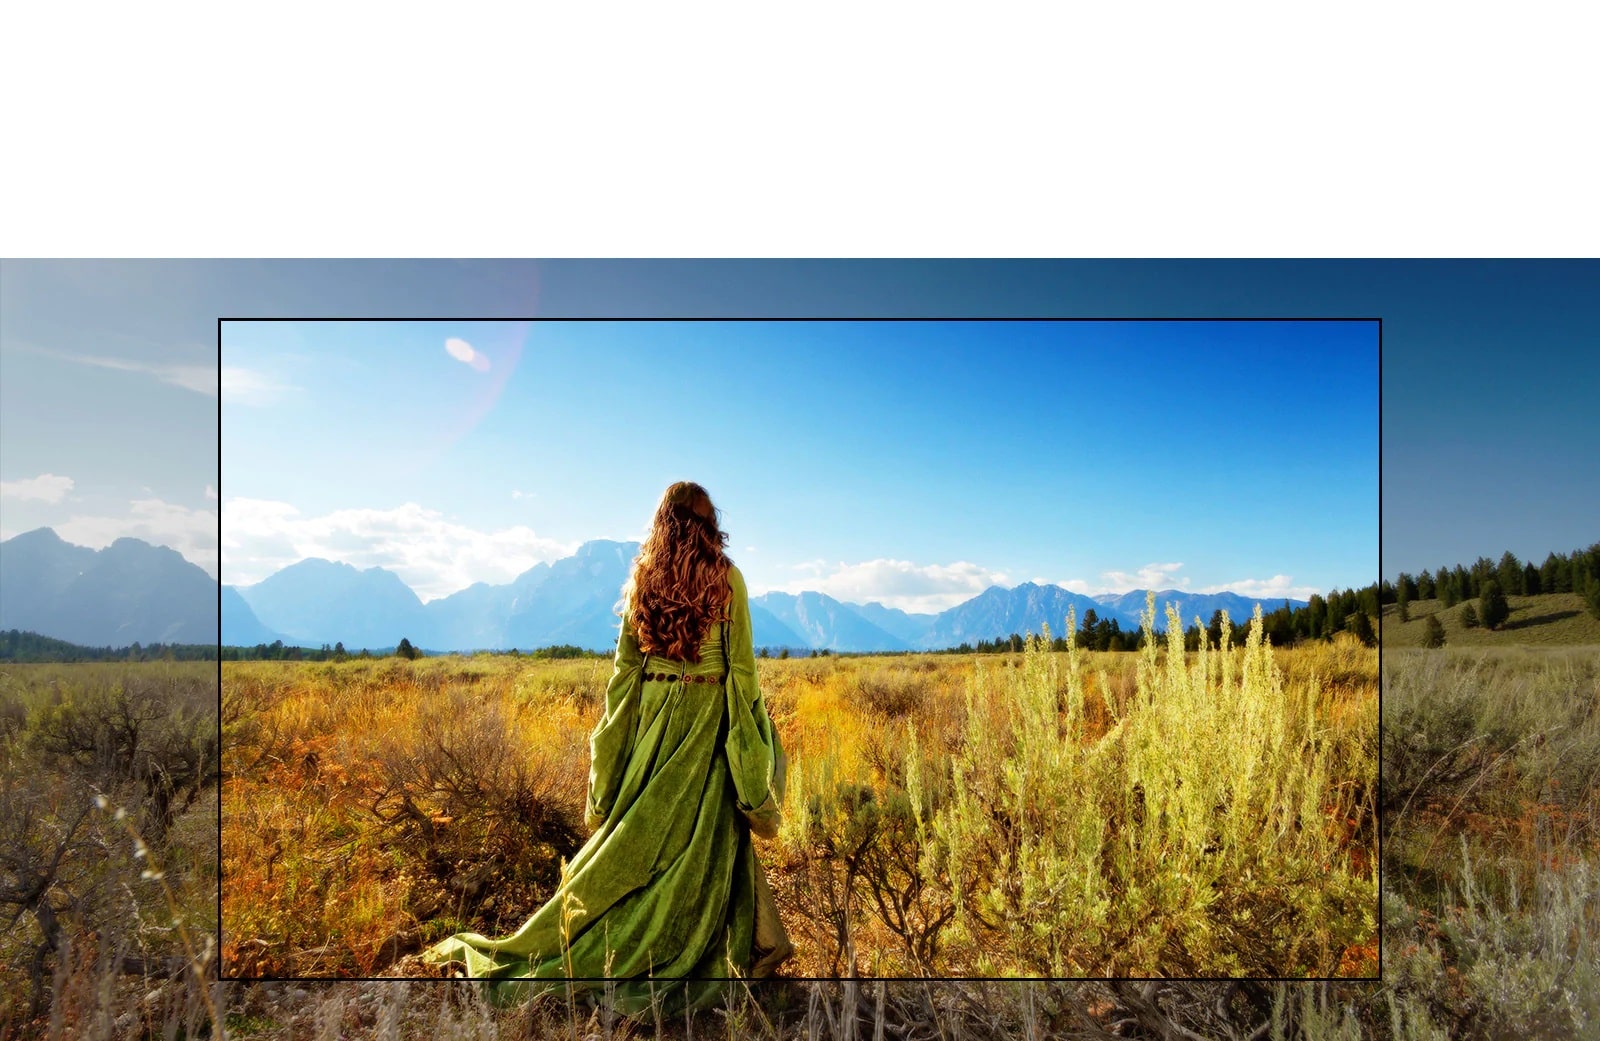 На экране телевизора показана сцена из фантастического фильма, где женщина стоит в поле лицом к горам.